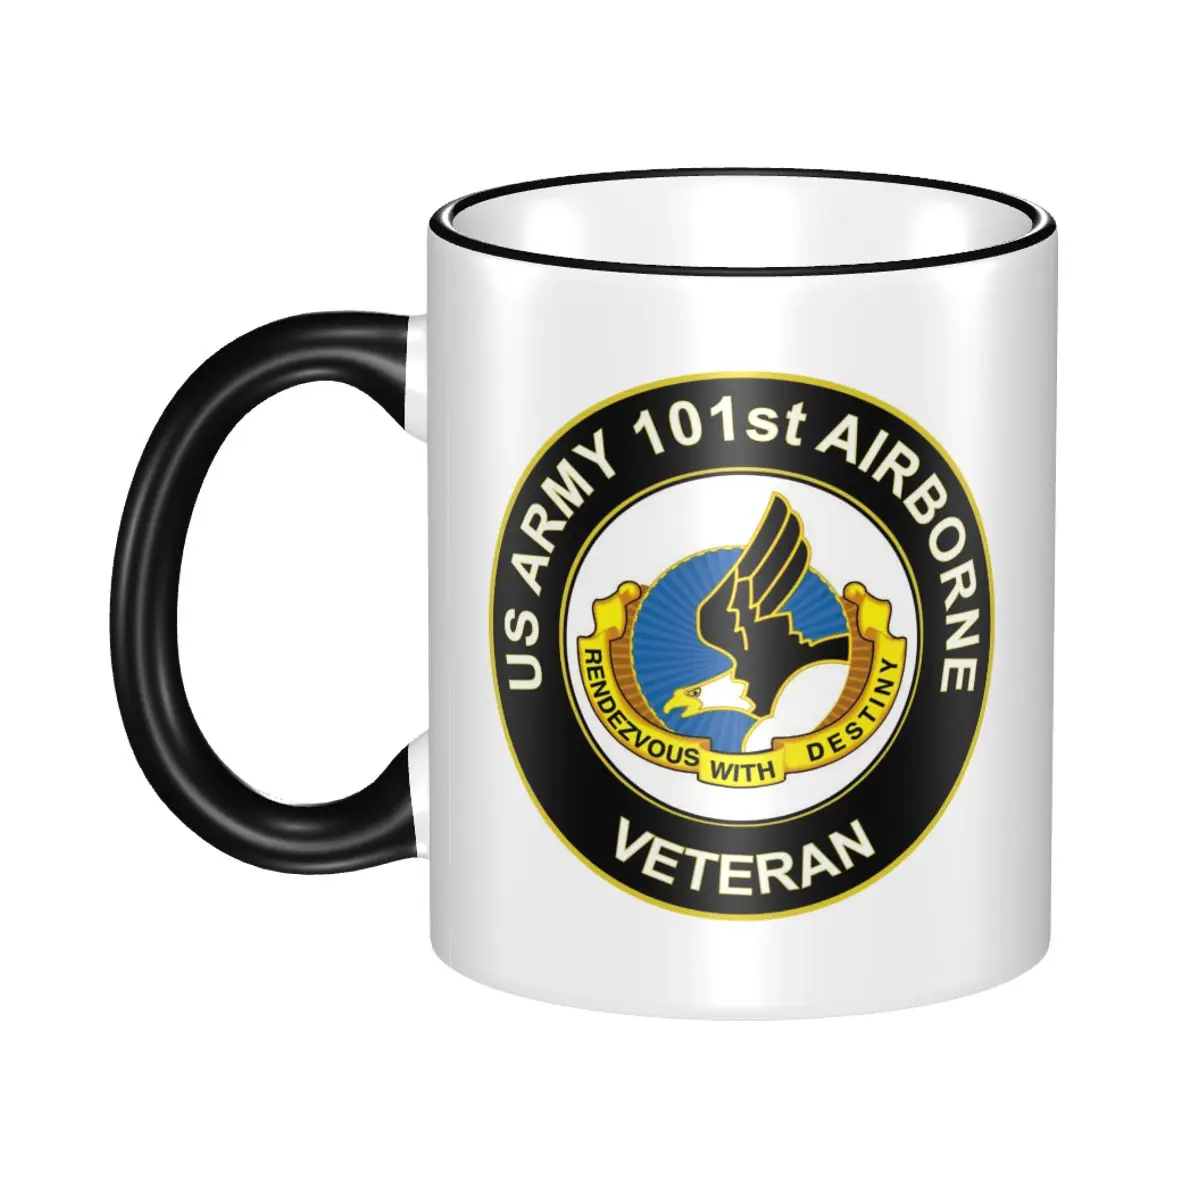 

Coffeeware Milk Mugen Drinkware U.S. Army Veteran 101st Airborne Unit Crest Best Gift for Your Friends